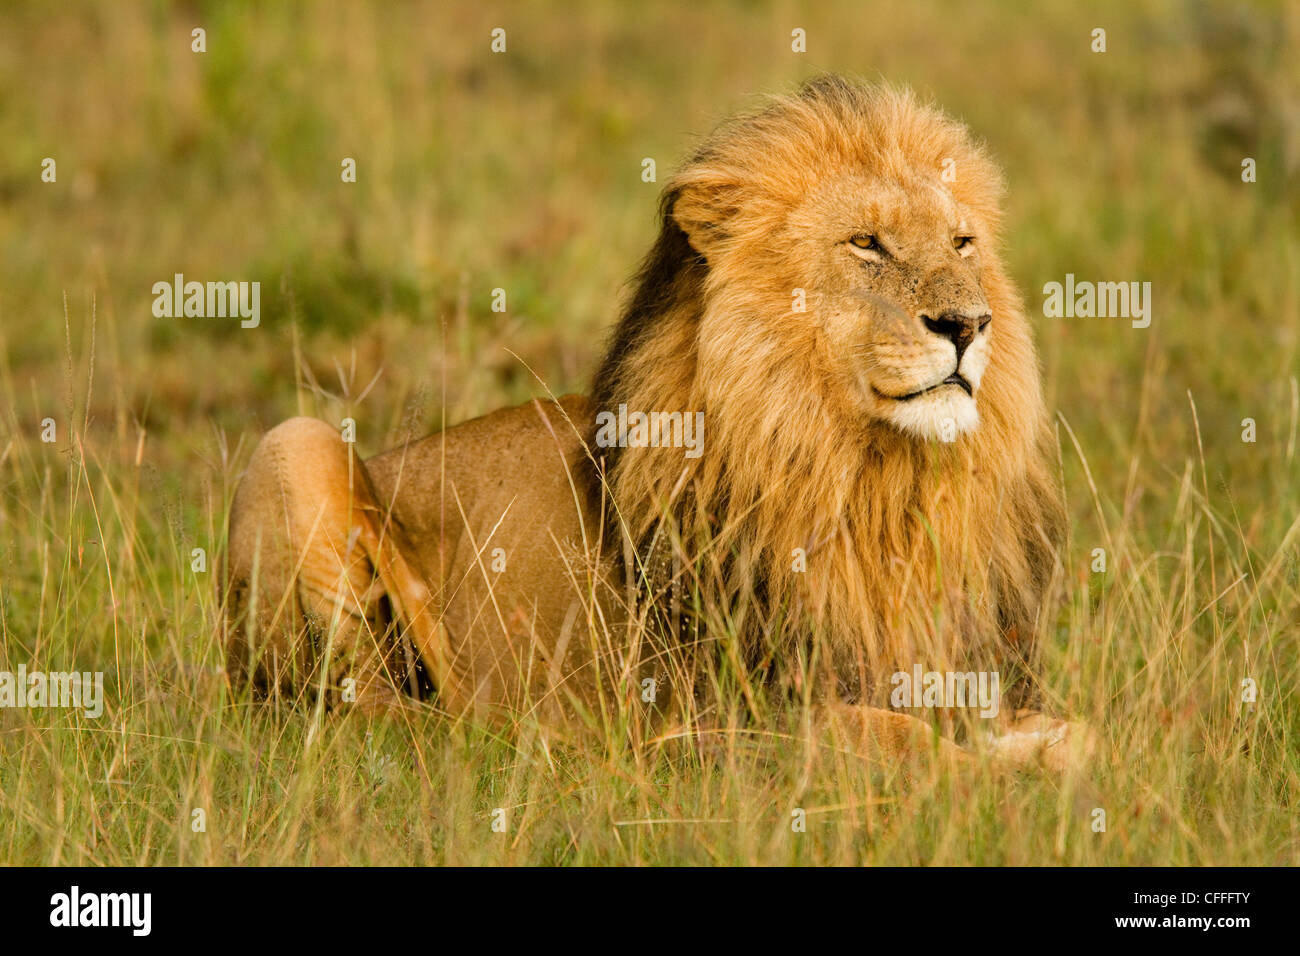 Les Lions de garder un œil sur leur domaine Masai Mara, Kenya. Banque D'Images